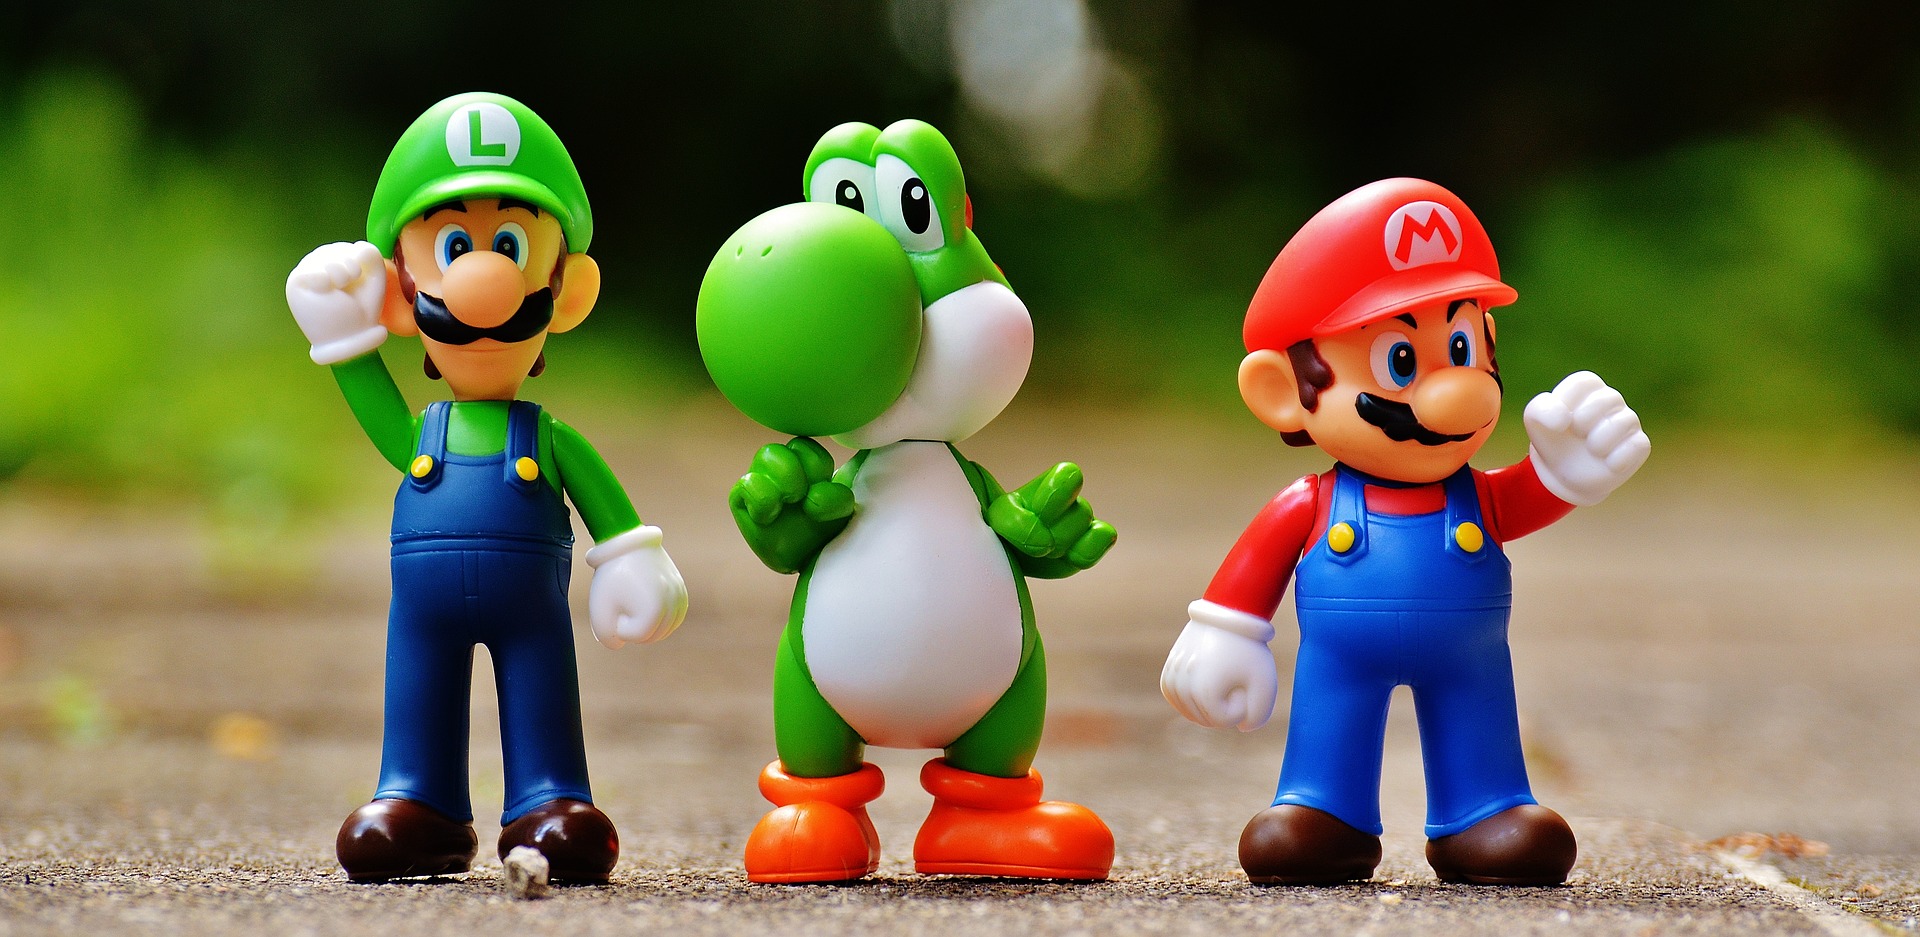 Mario, Luigi and Yoshi